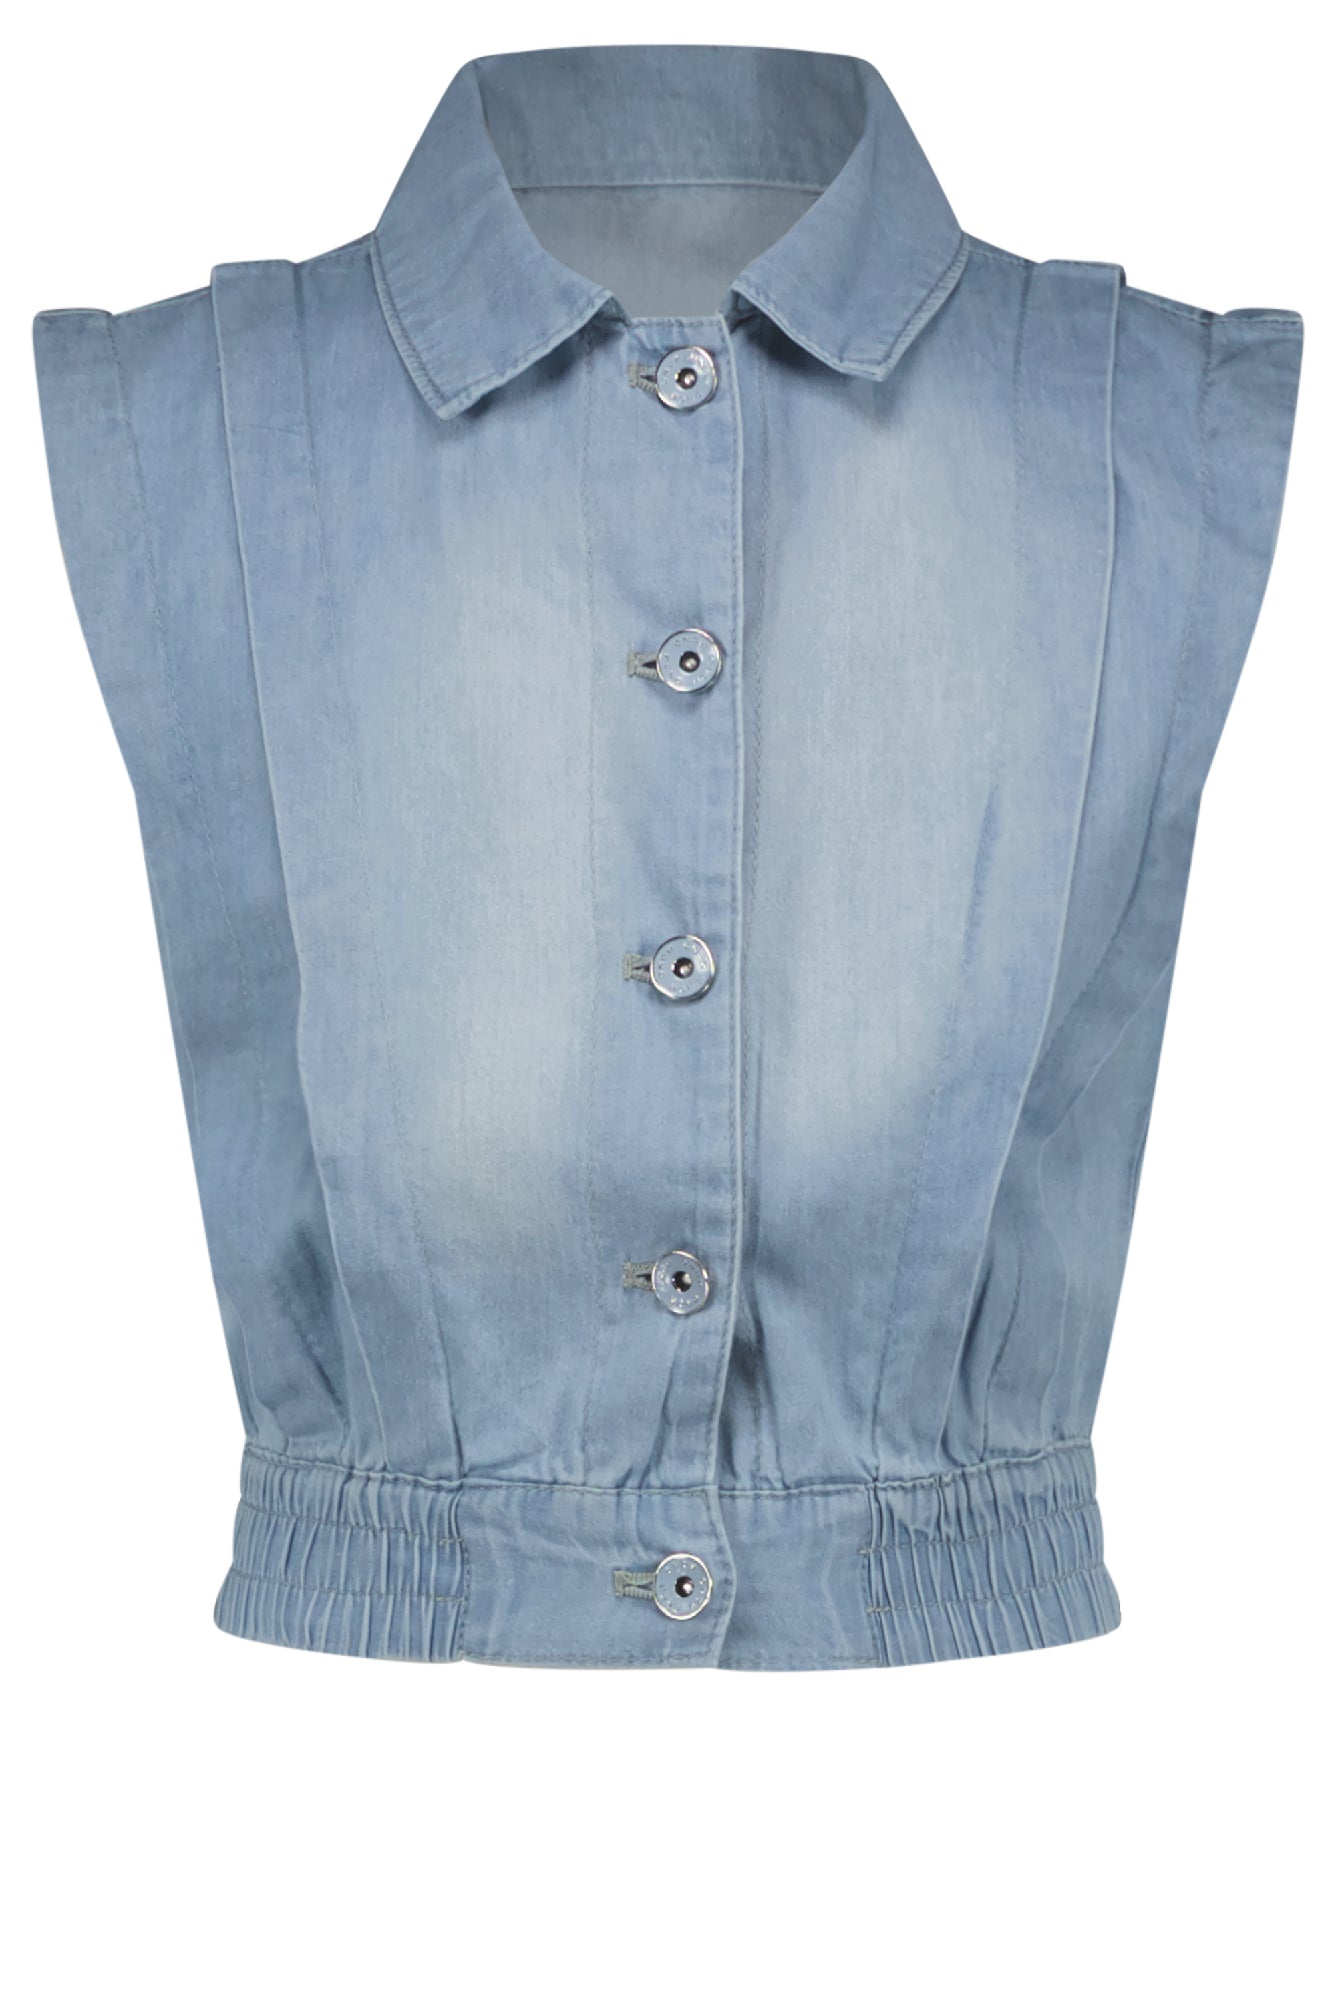 Meisjes Donka sleeveless denim button up vest van NoNo in de kleur Jeans in maat 134-140.